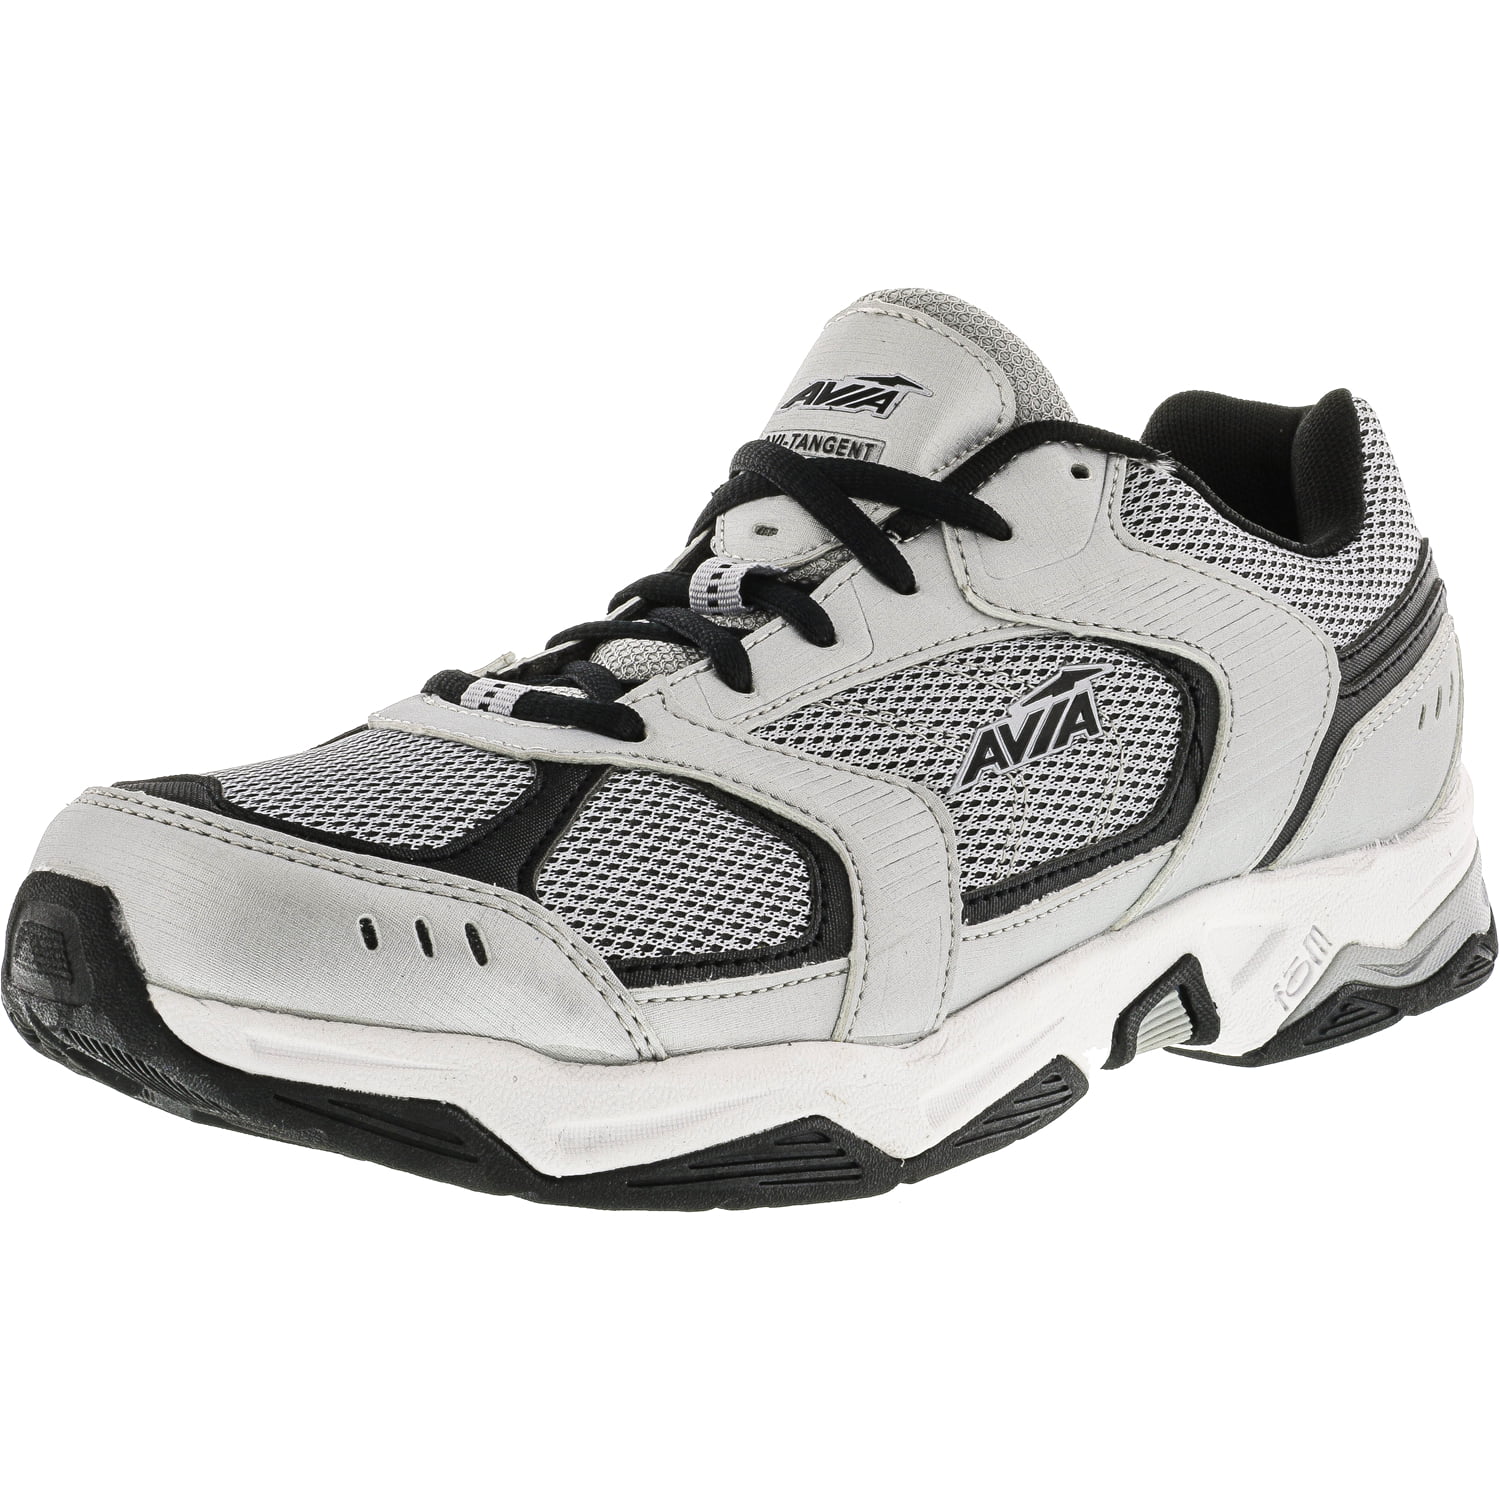 Avia Men's Avi-Tangent Grey / Black Ankle-High Running Shoe - 10M ...